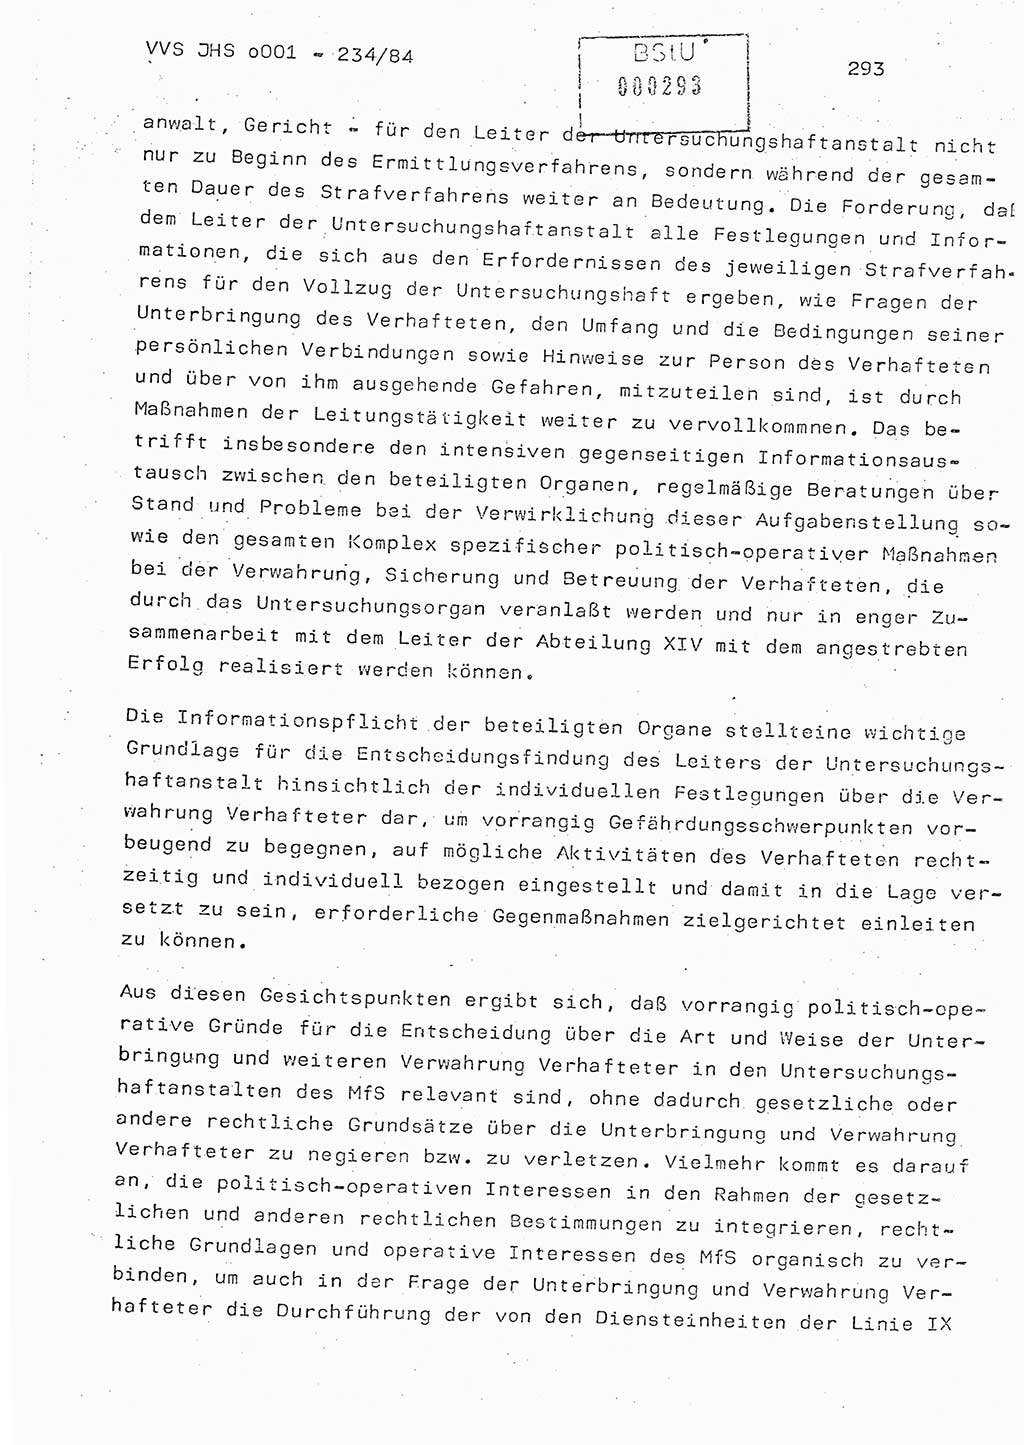 Dissertation Oberst Siegfried Rataizick (Abt. ⅩⅣ), Oberstleutnant Volkmar Heinz (Abt. ⅩⅣ), Oberstleutnant Werner Stein (HA Ⅸ), Hauptmann Heinz Conrad (JHS), Ministerium für Staatssicherheit (MfS) [Deutsche Demokratische Republik (DDR)], Juristische Hochschule (JHS), Vertrauliche Verschlußsache (VVS) o001-234/84, Potsdam 1984, Seite 293 (Diss. MfS DDR JHS VVS o001-234/84 1984, S. 293)